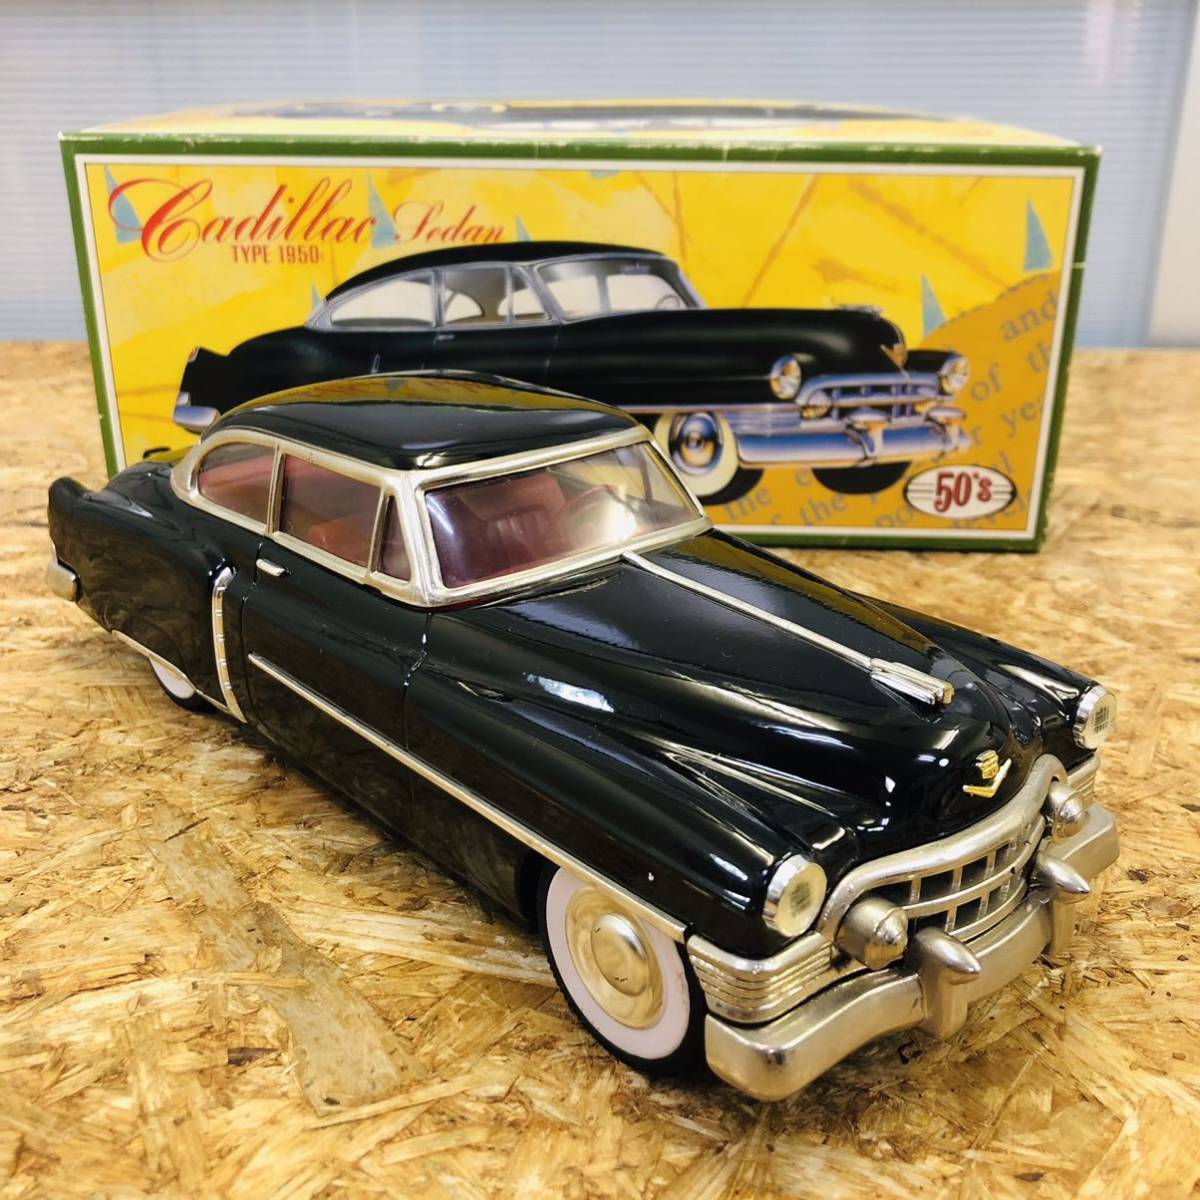 Fifties Cadillac 1950 セダン ミニカー モデルカー | Fifties